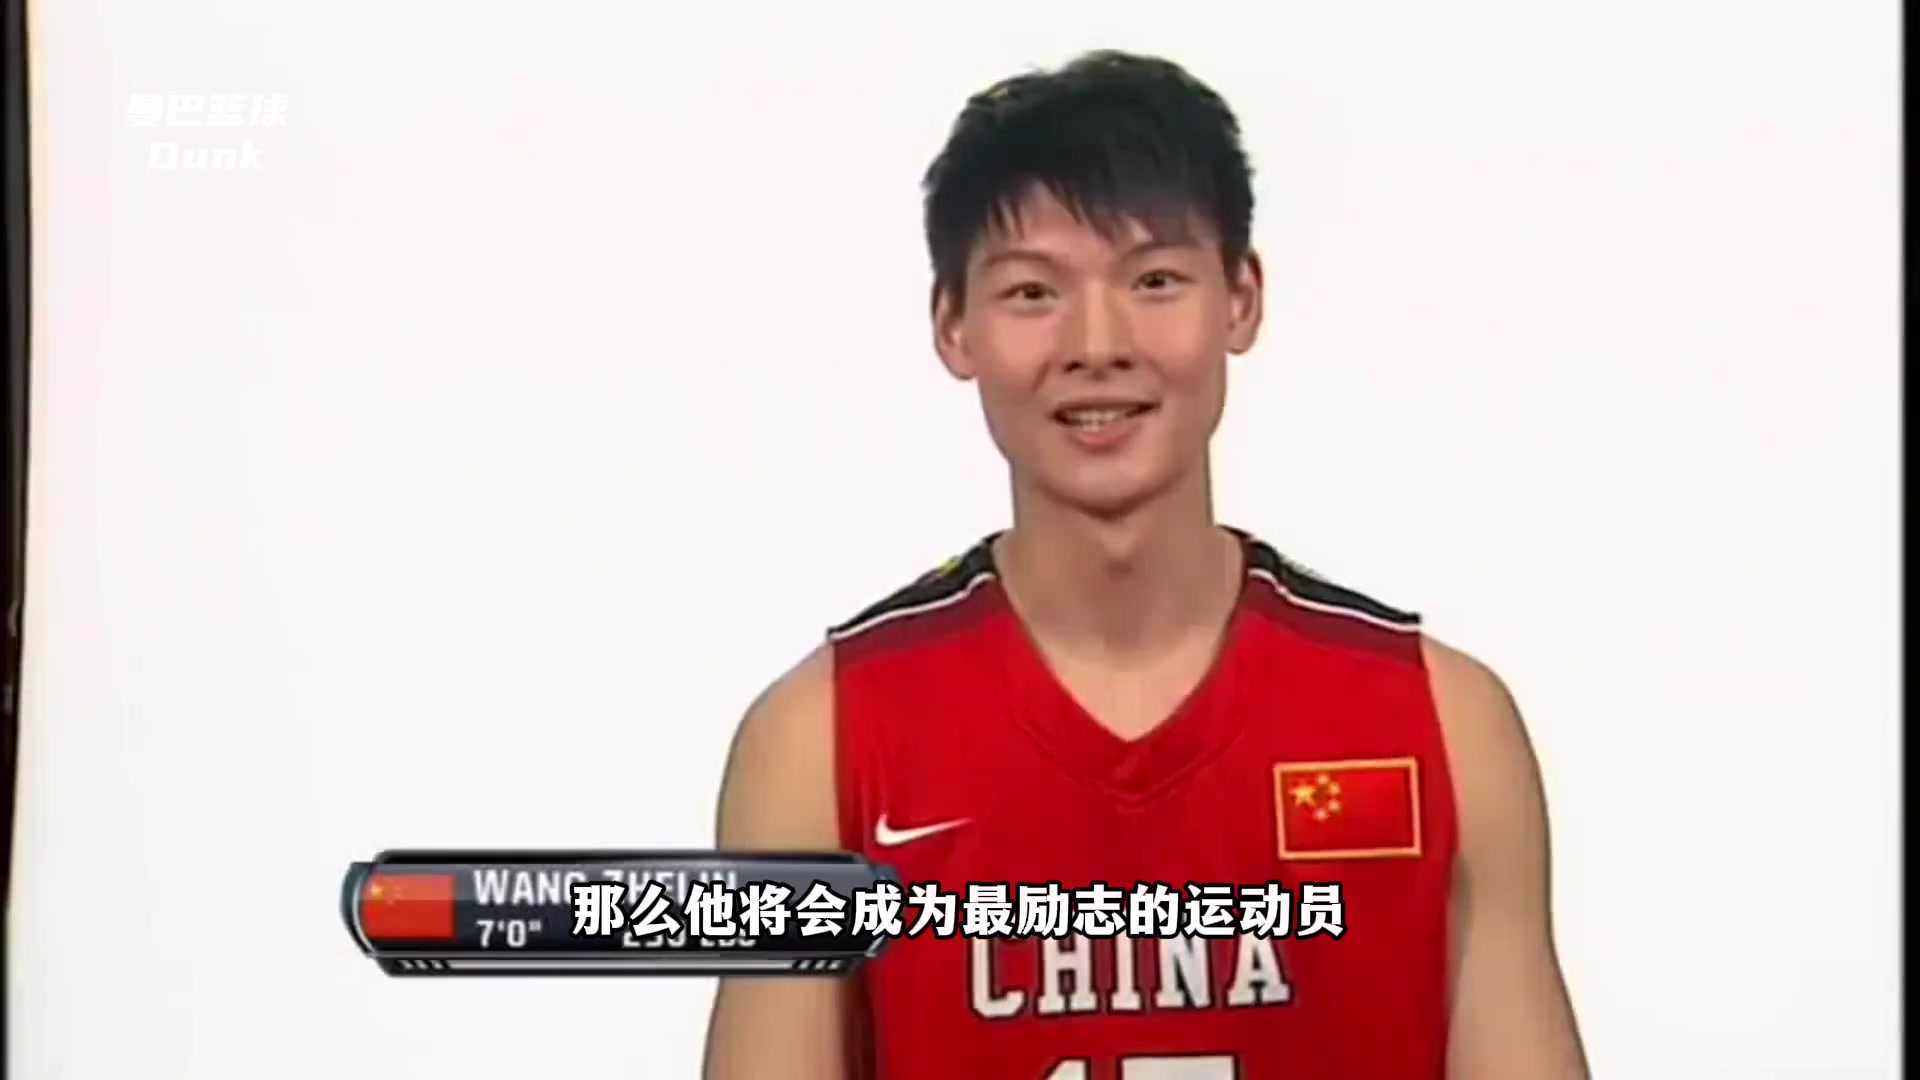 如果倒放王哲林篮球生涯那他将成为中国篮坛最励志的球员